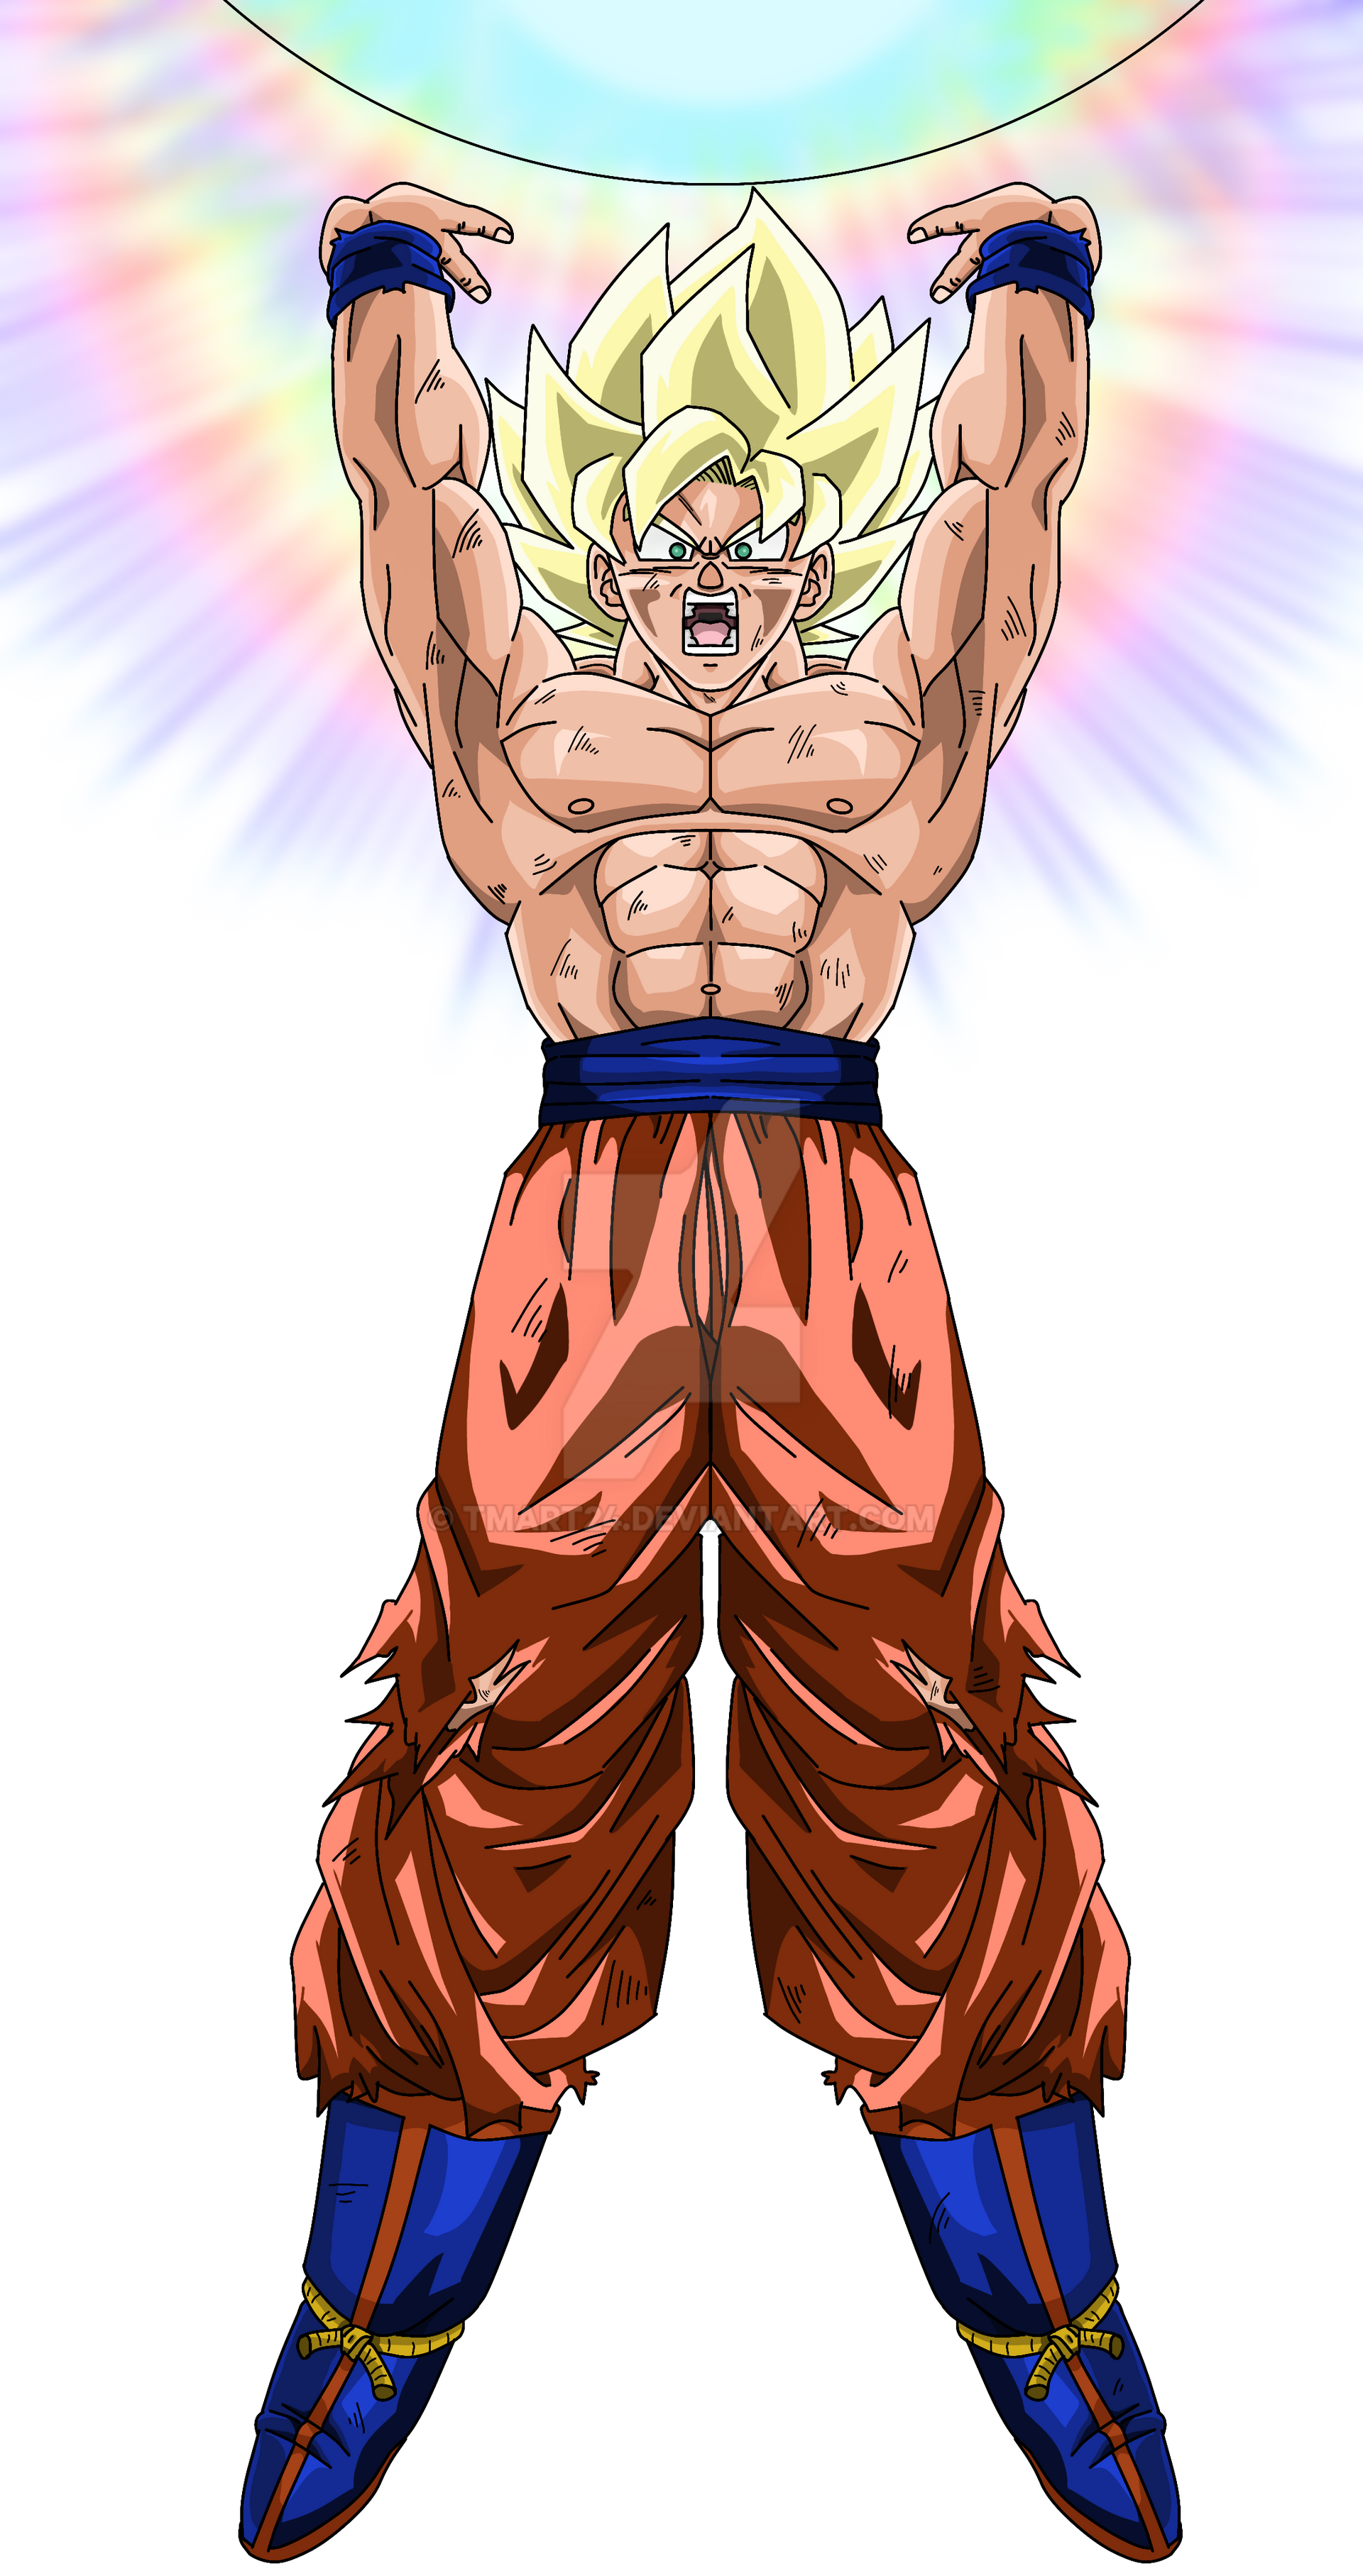 Super Saiyan God Super Saiyan Goku by spriteman1000 on DeviantArt